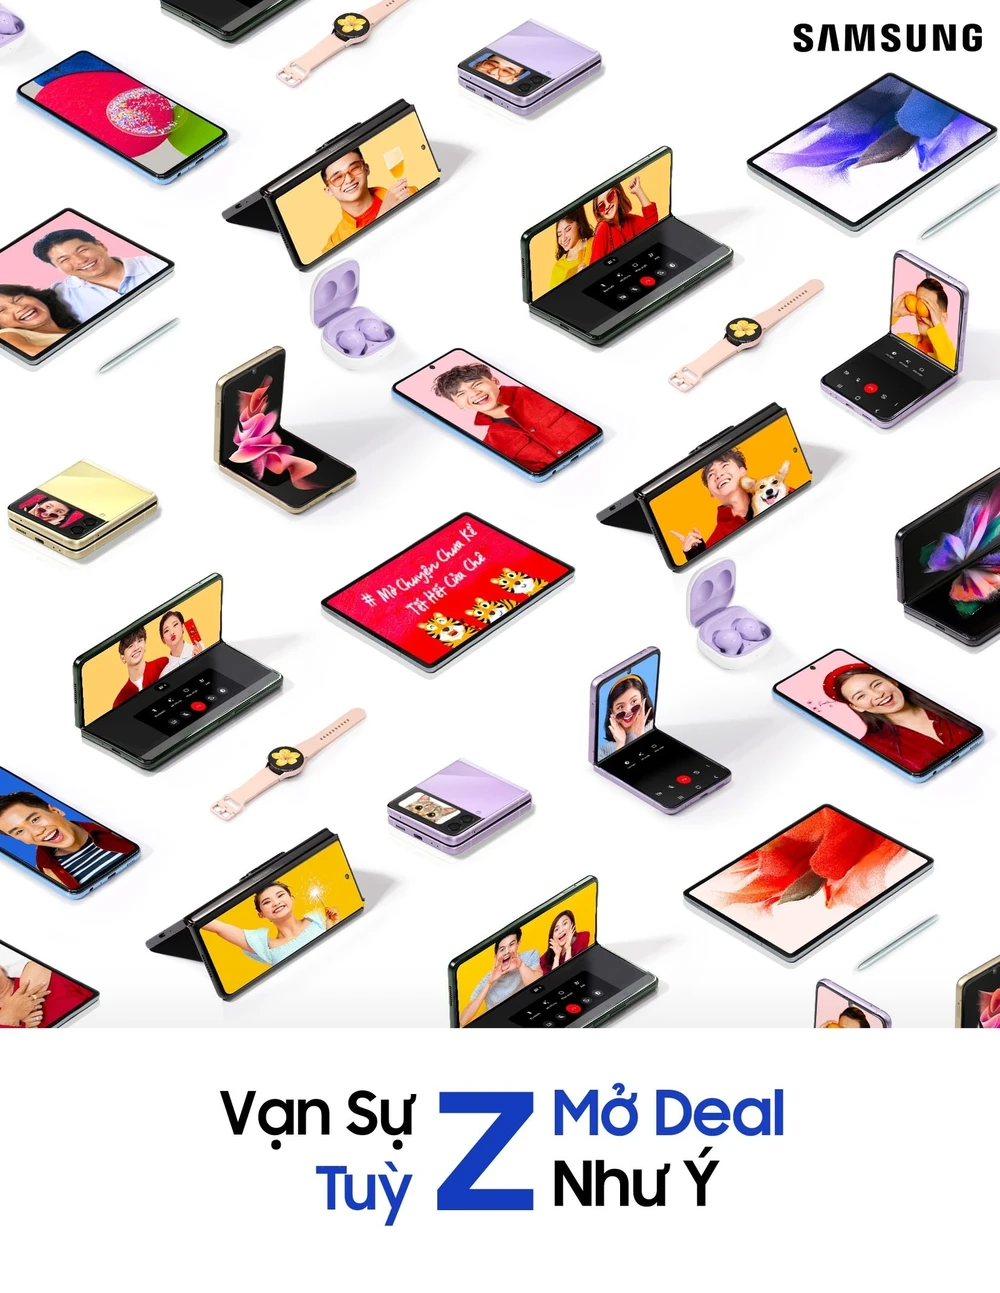 Samsung đón tết tưng bừng với ưu đãi “Vạn sự tùy Z, Mở deal như ý”